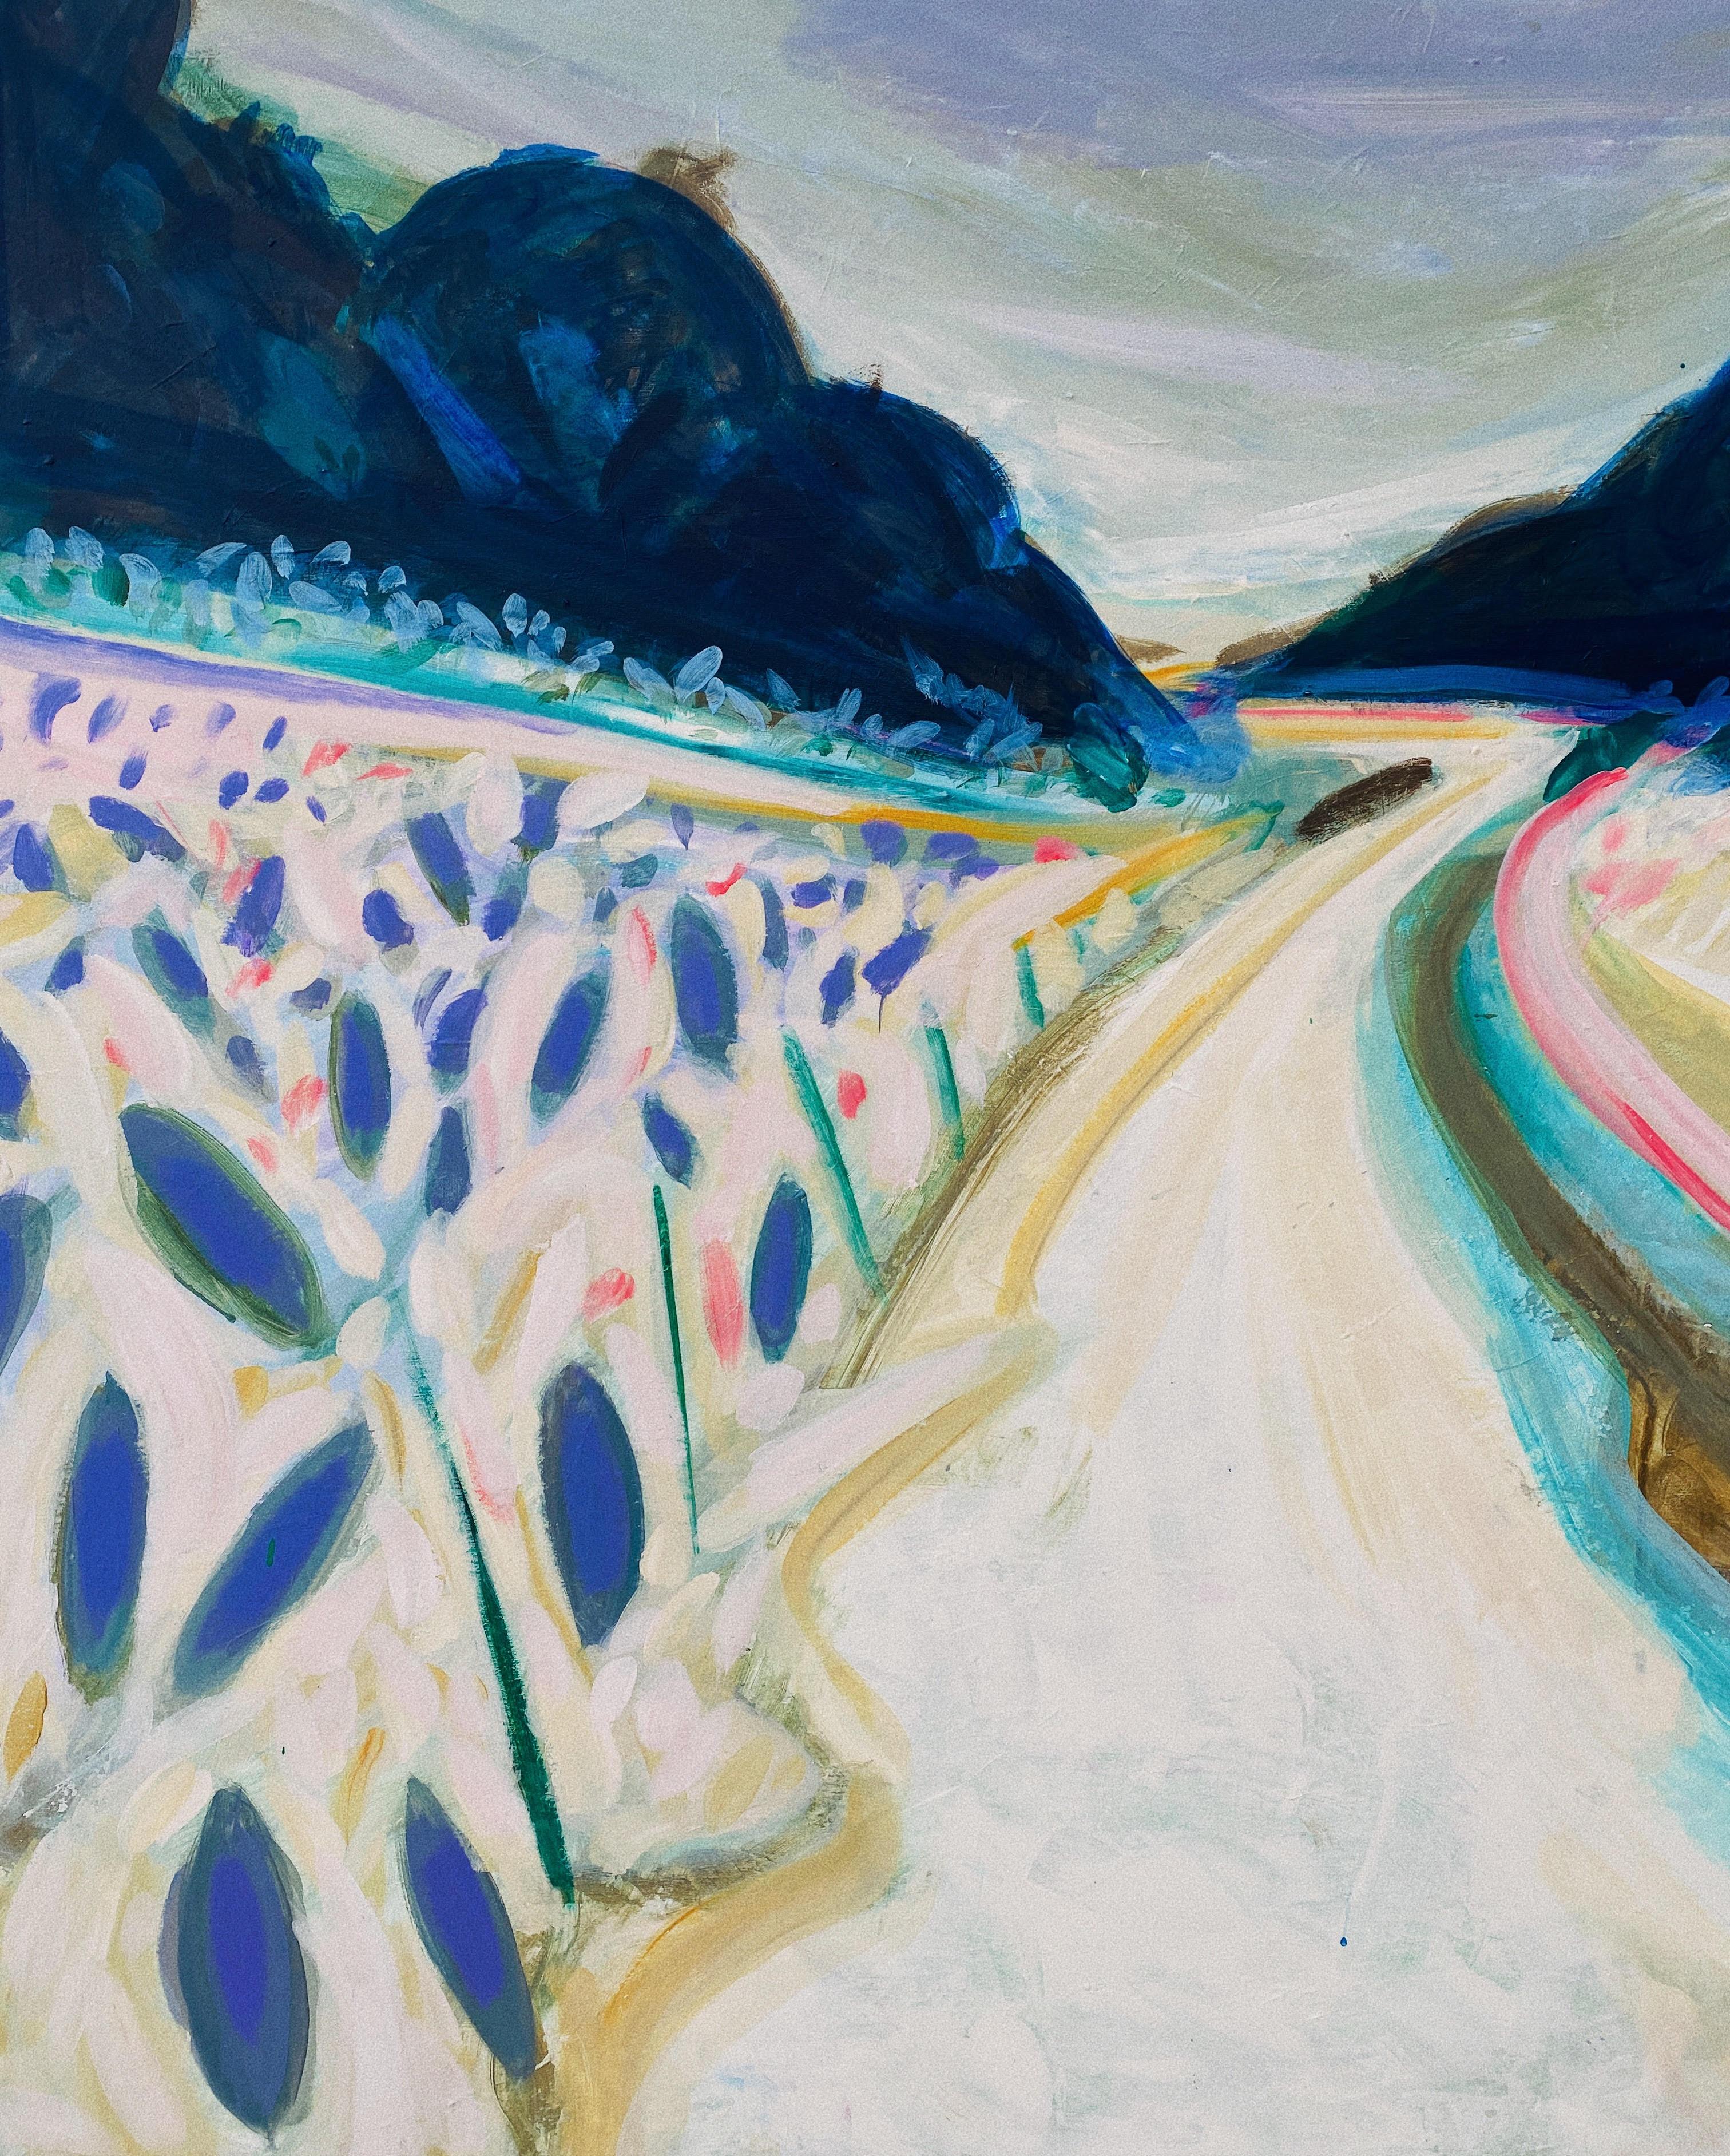 Paysage d'hiver - peinture abstraite réalisée en bleu, rose, turquoise - Painting de Sardor Erkinov